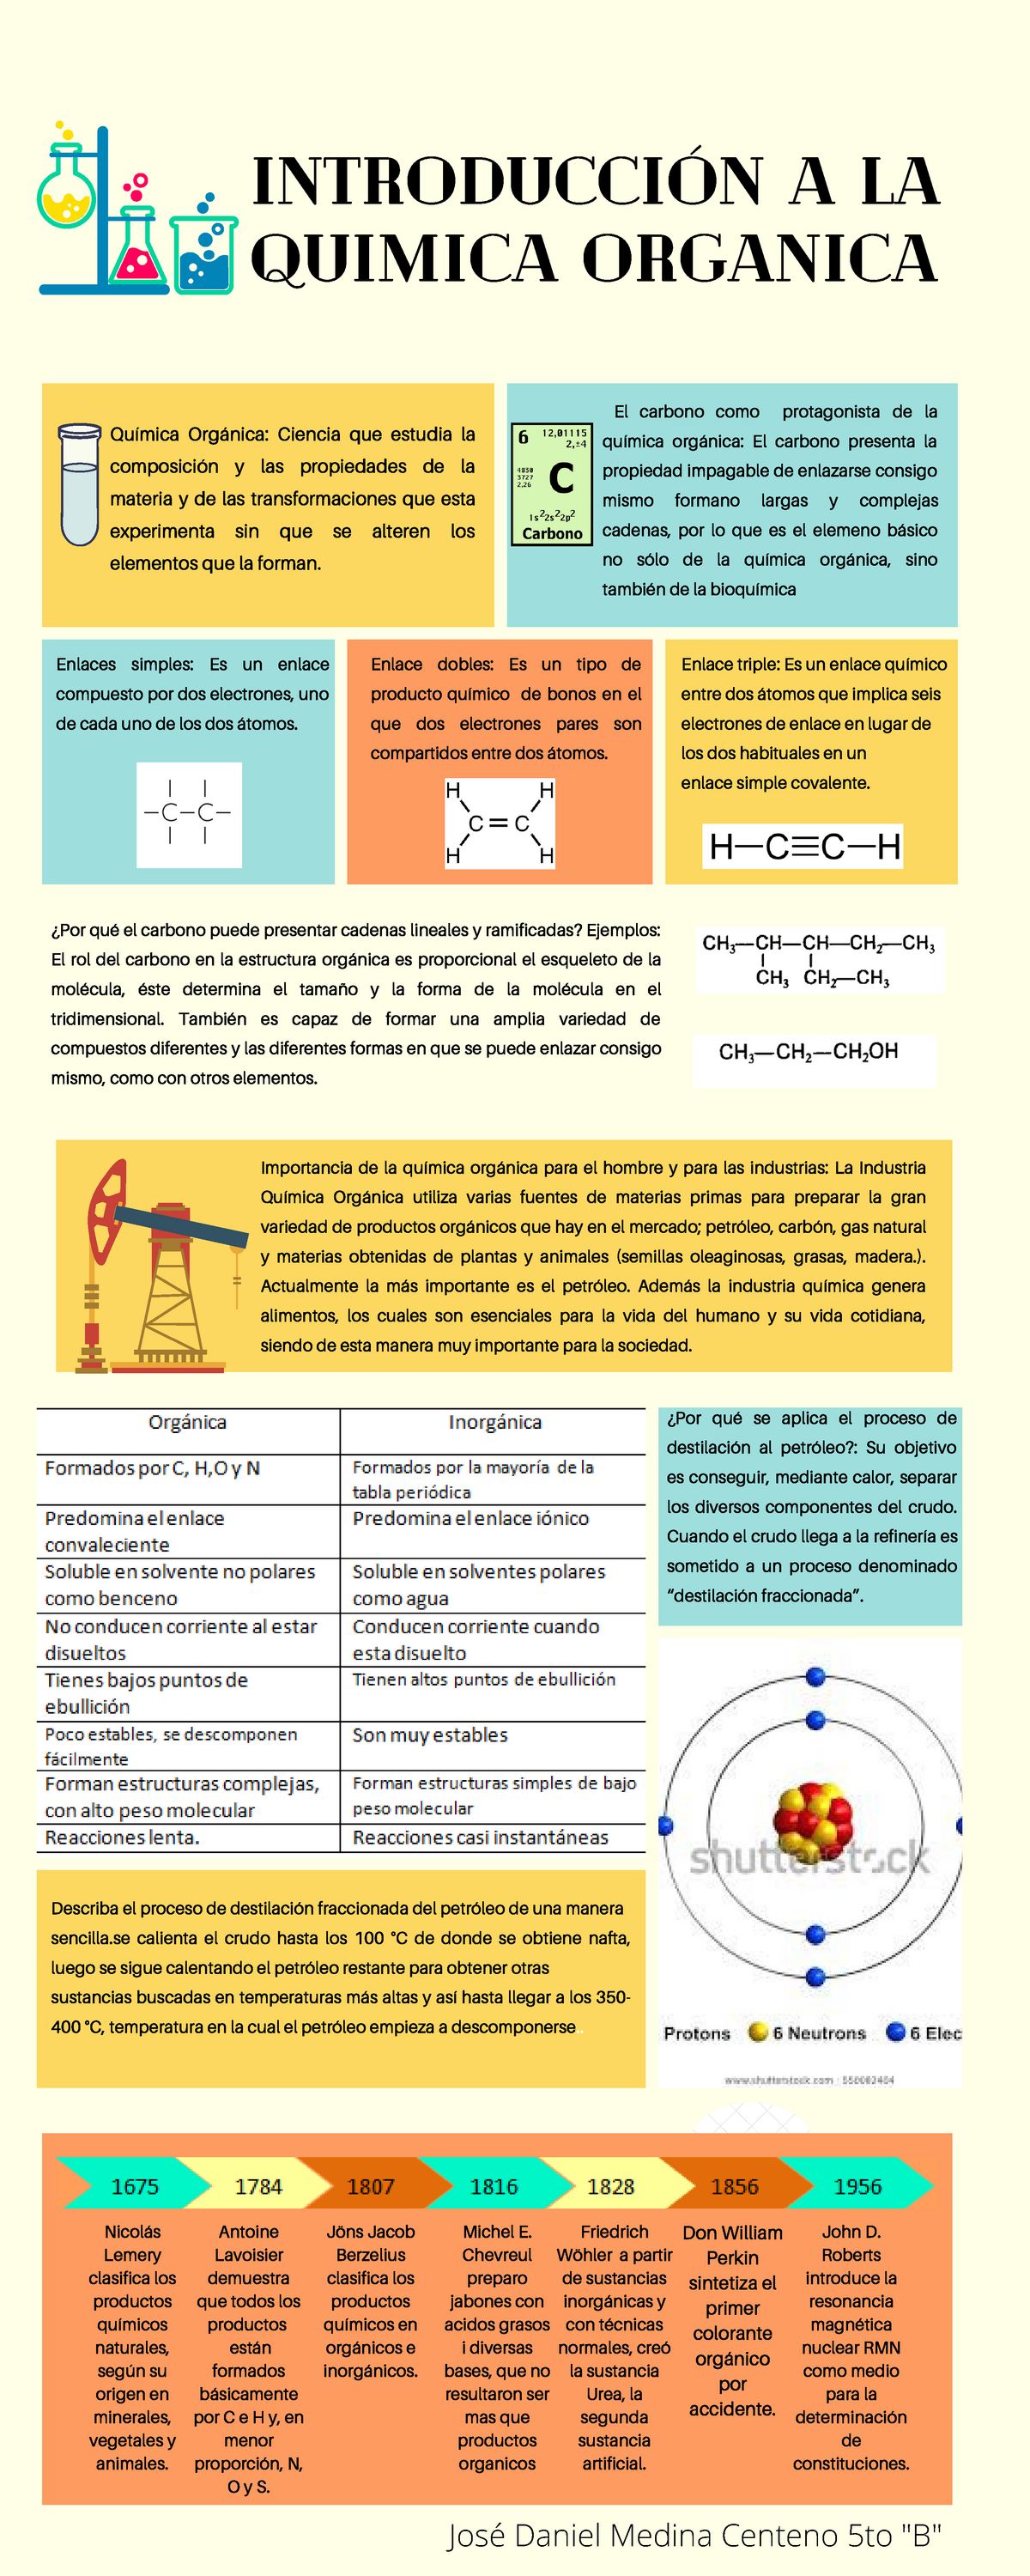 Infografia Sobre La Quimica Organica Images And Photos Finder